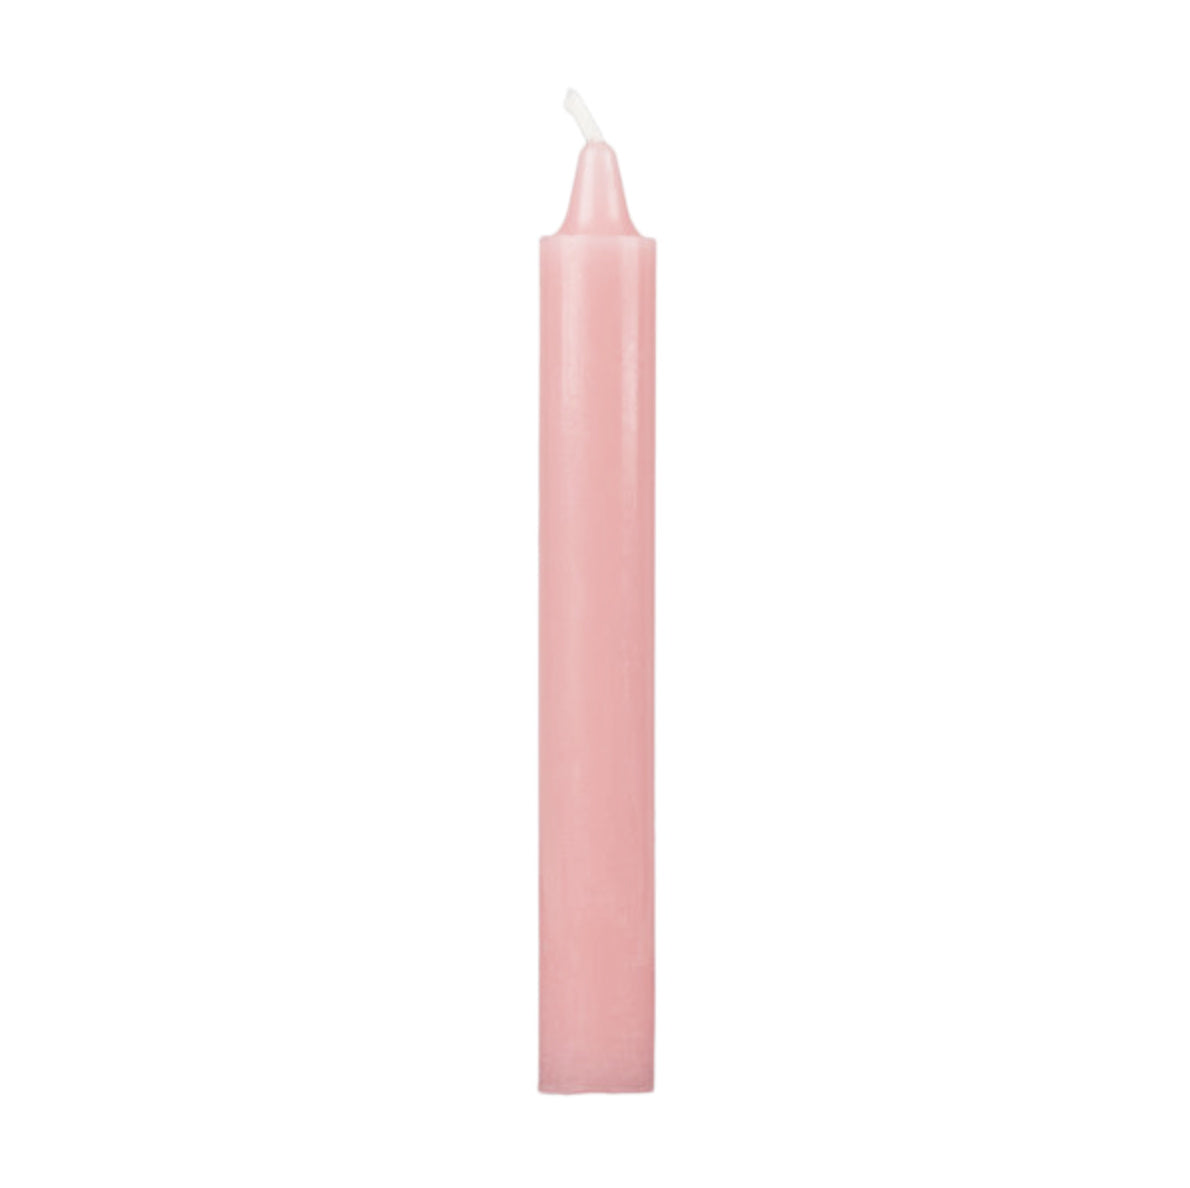 Basic pink cylindrical candle / 4 pcs.